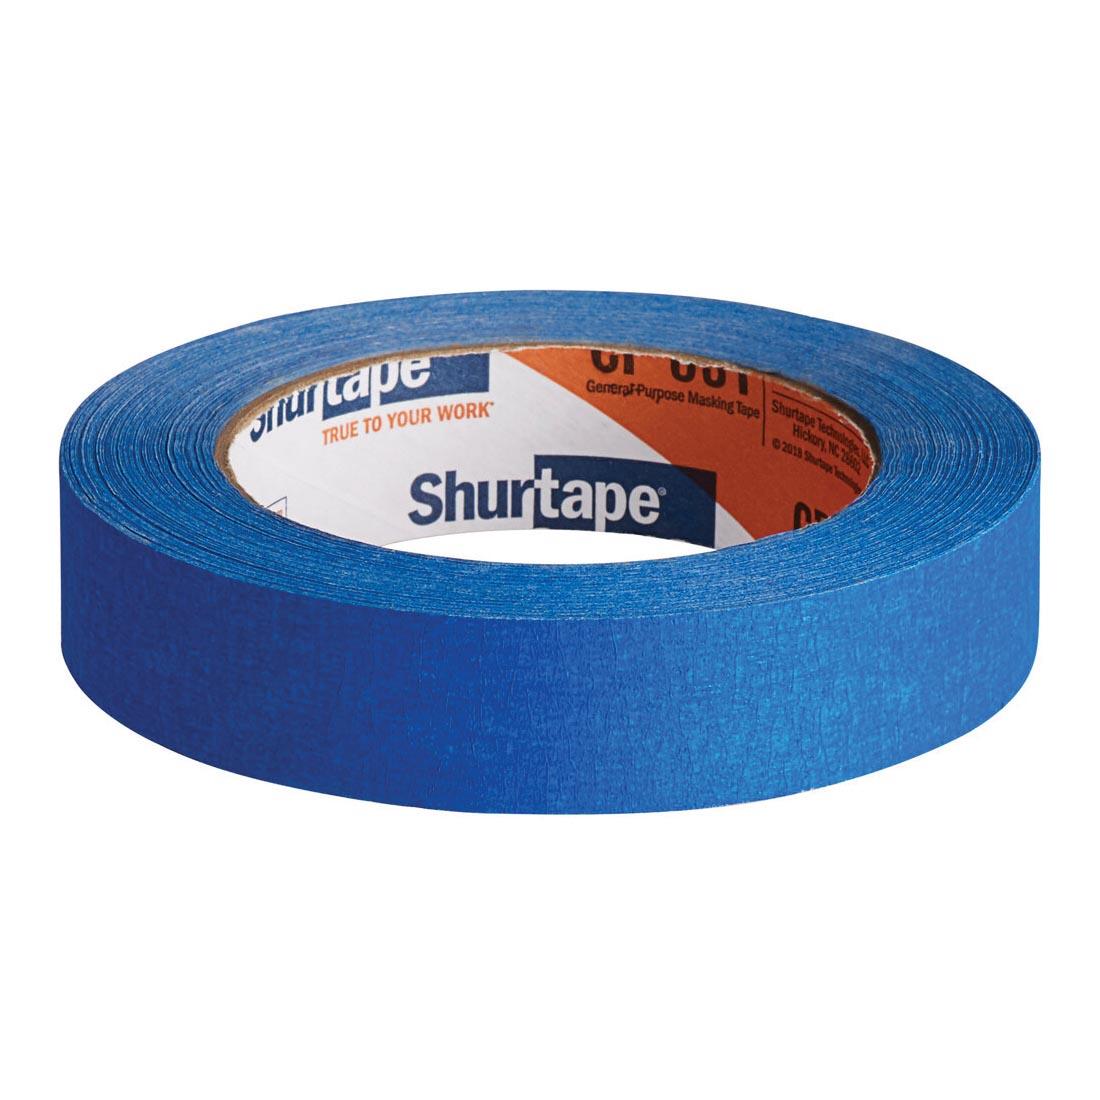 Blue Shurtape CP 631 General Purpose Masking Tape